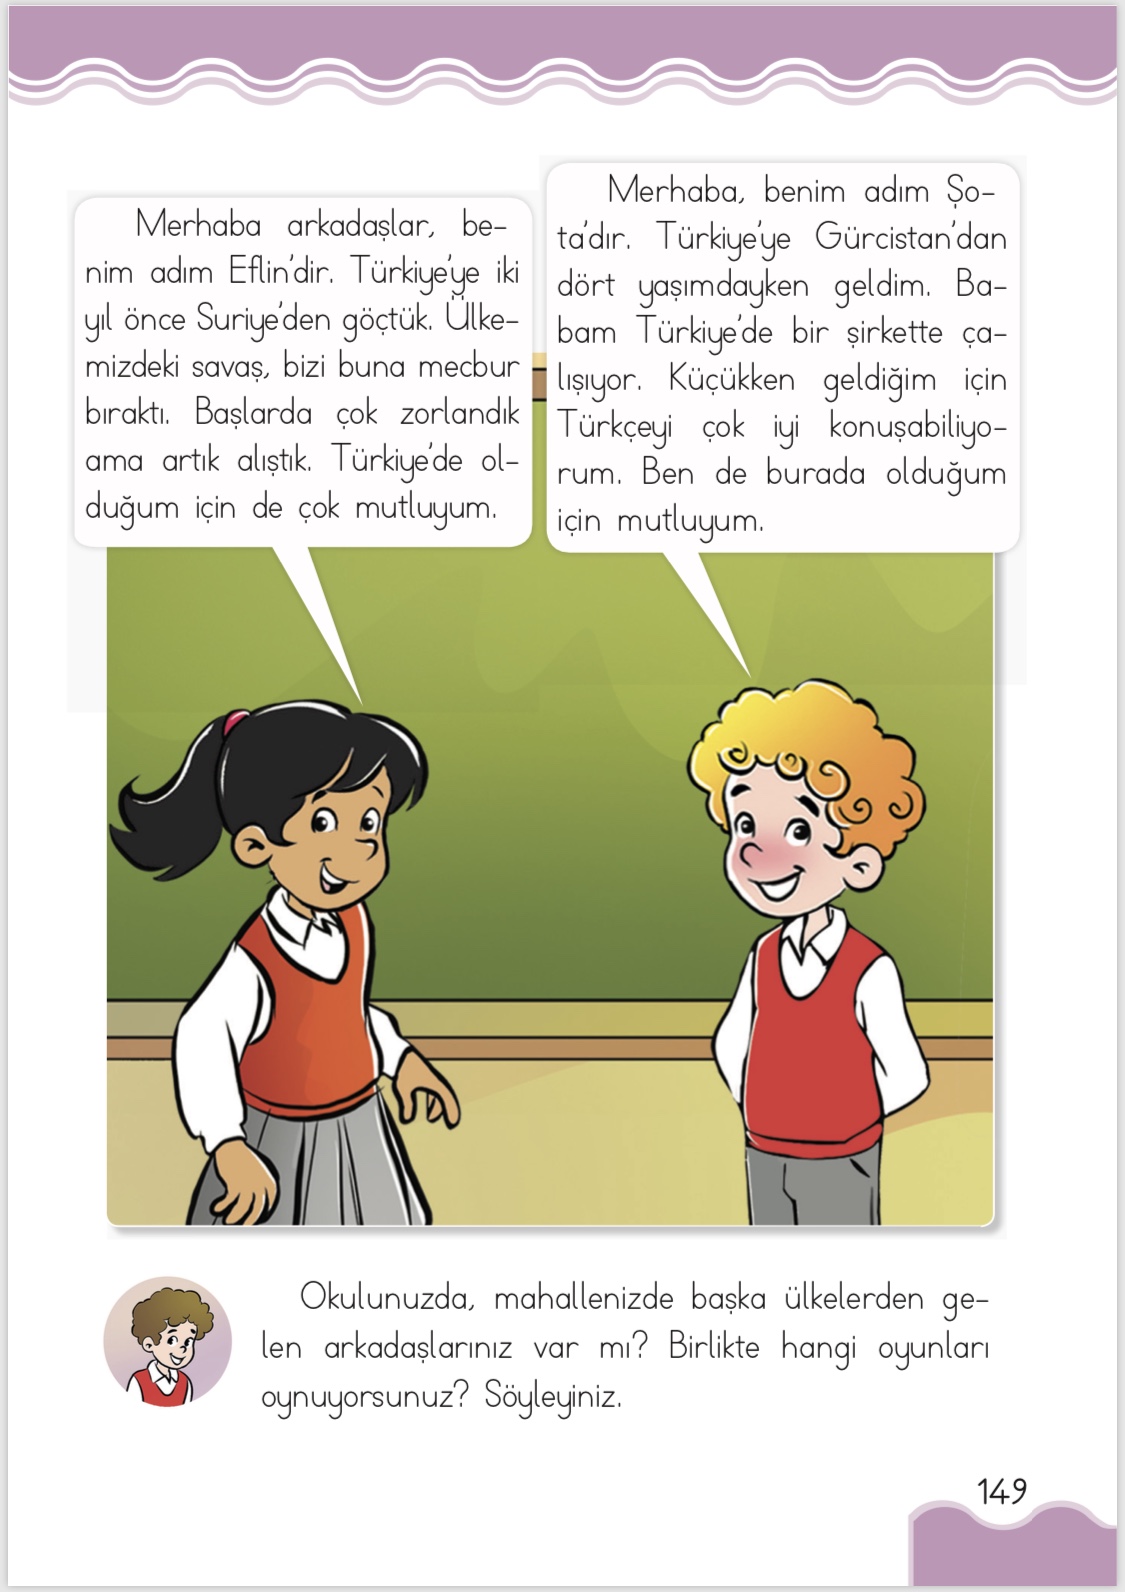 Turkey school book refugees